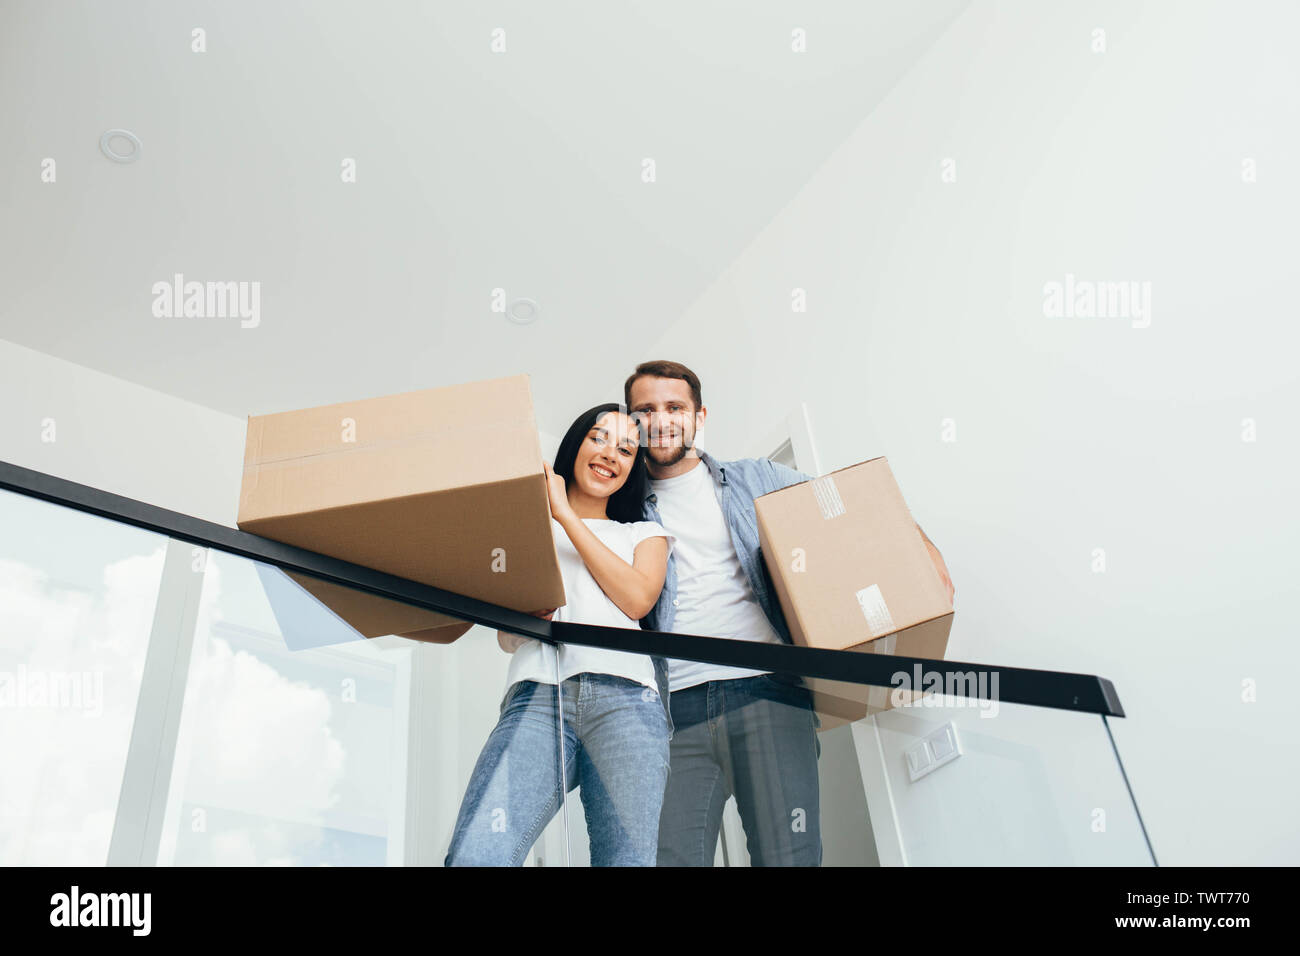 Jeune beau couple debout dans un nouvel appartement. Belle femme et homme tenant des boîtes en carton dans de nouveaux appartements Banque D'Images